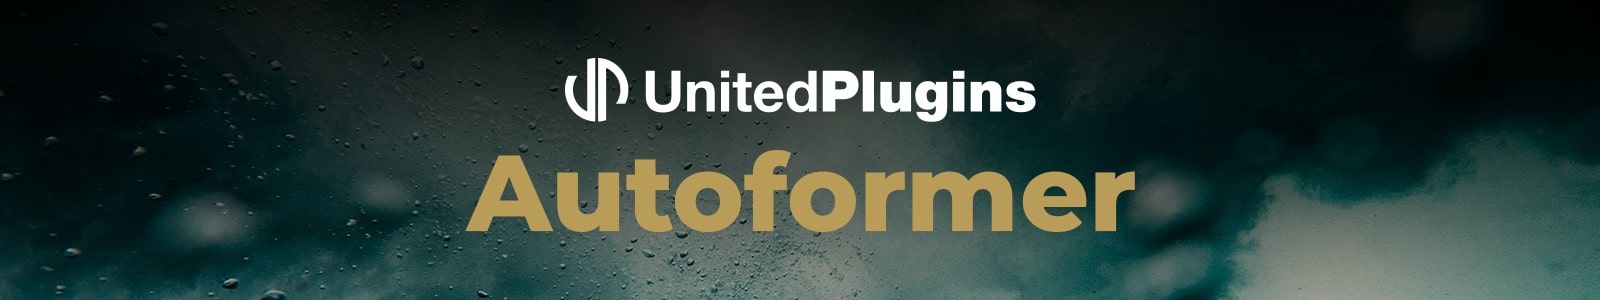 United Plugins Autoformer